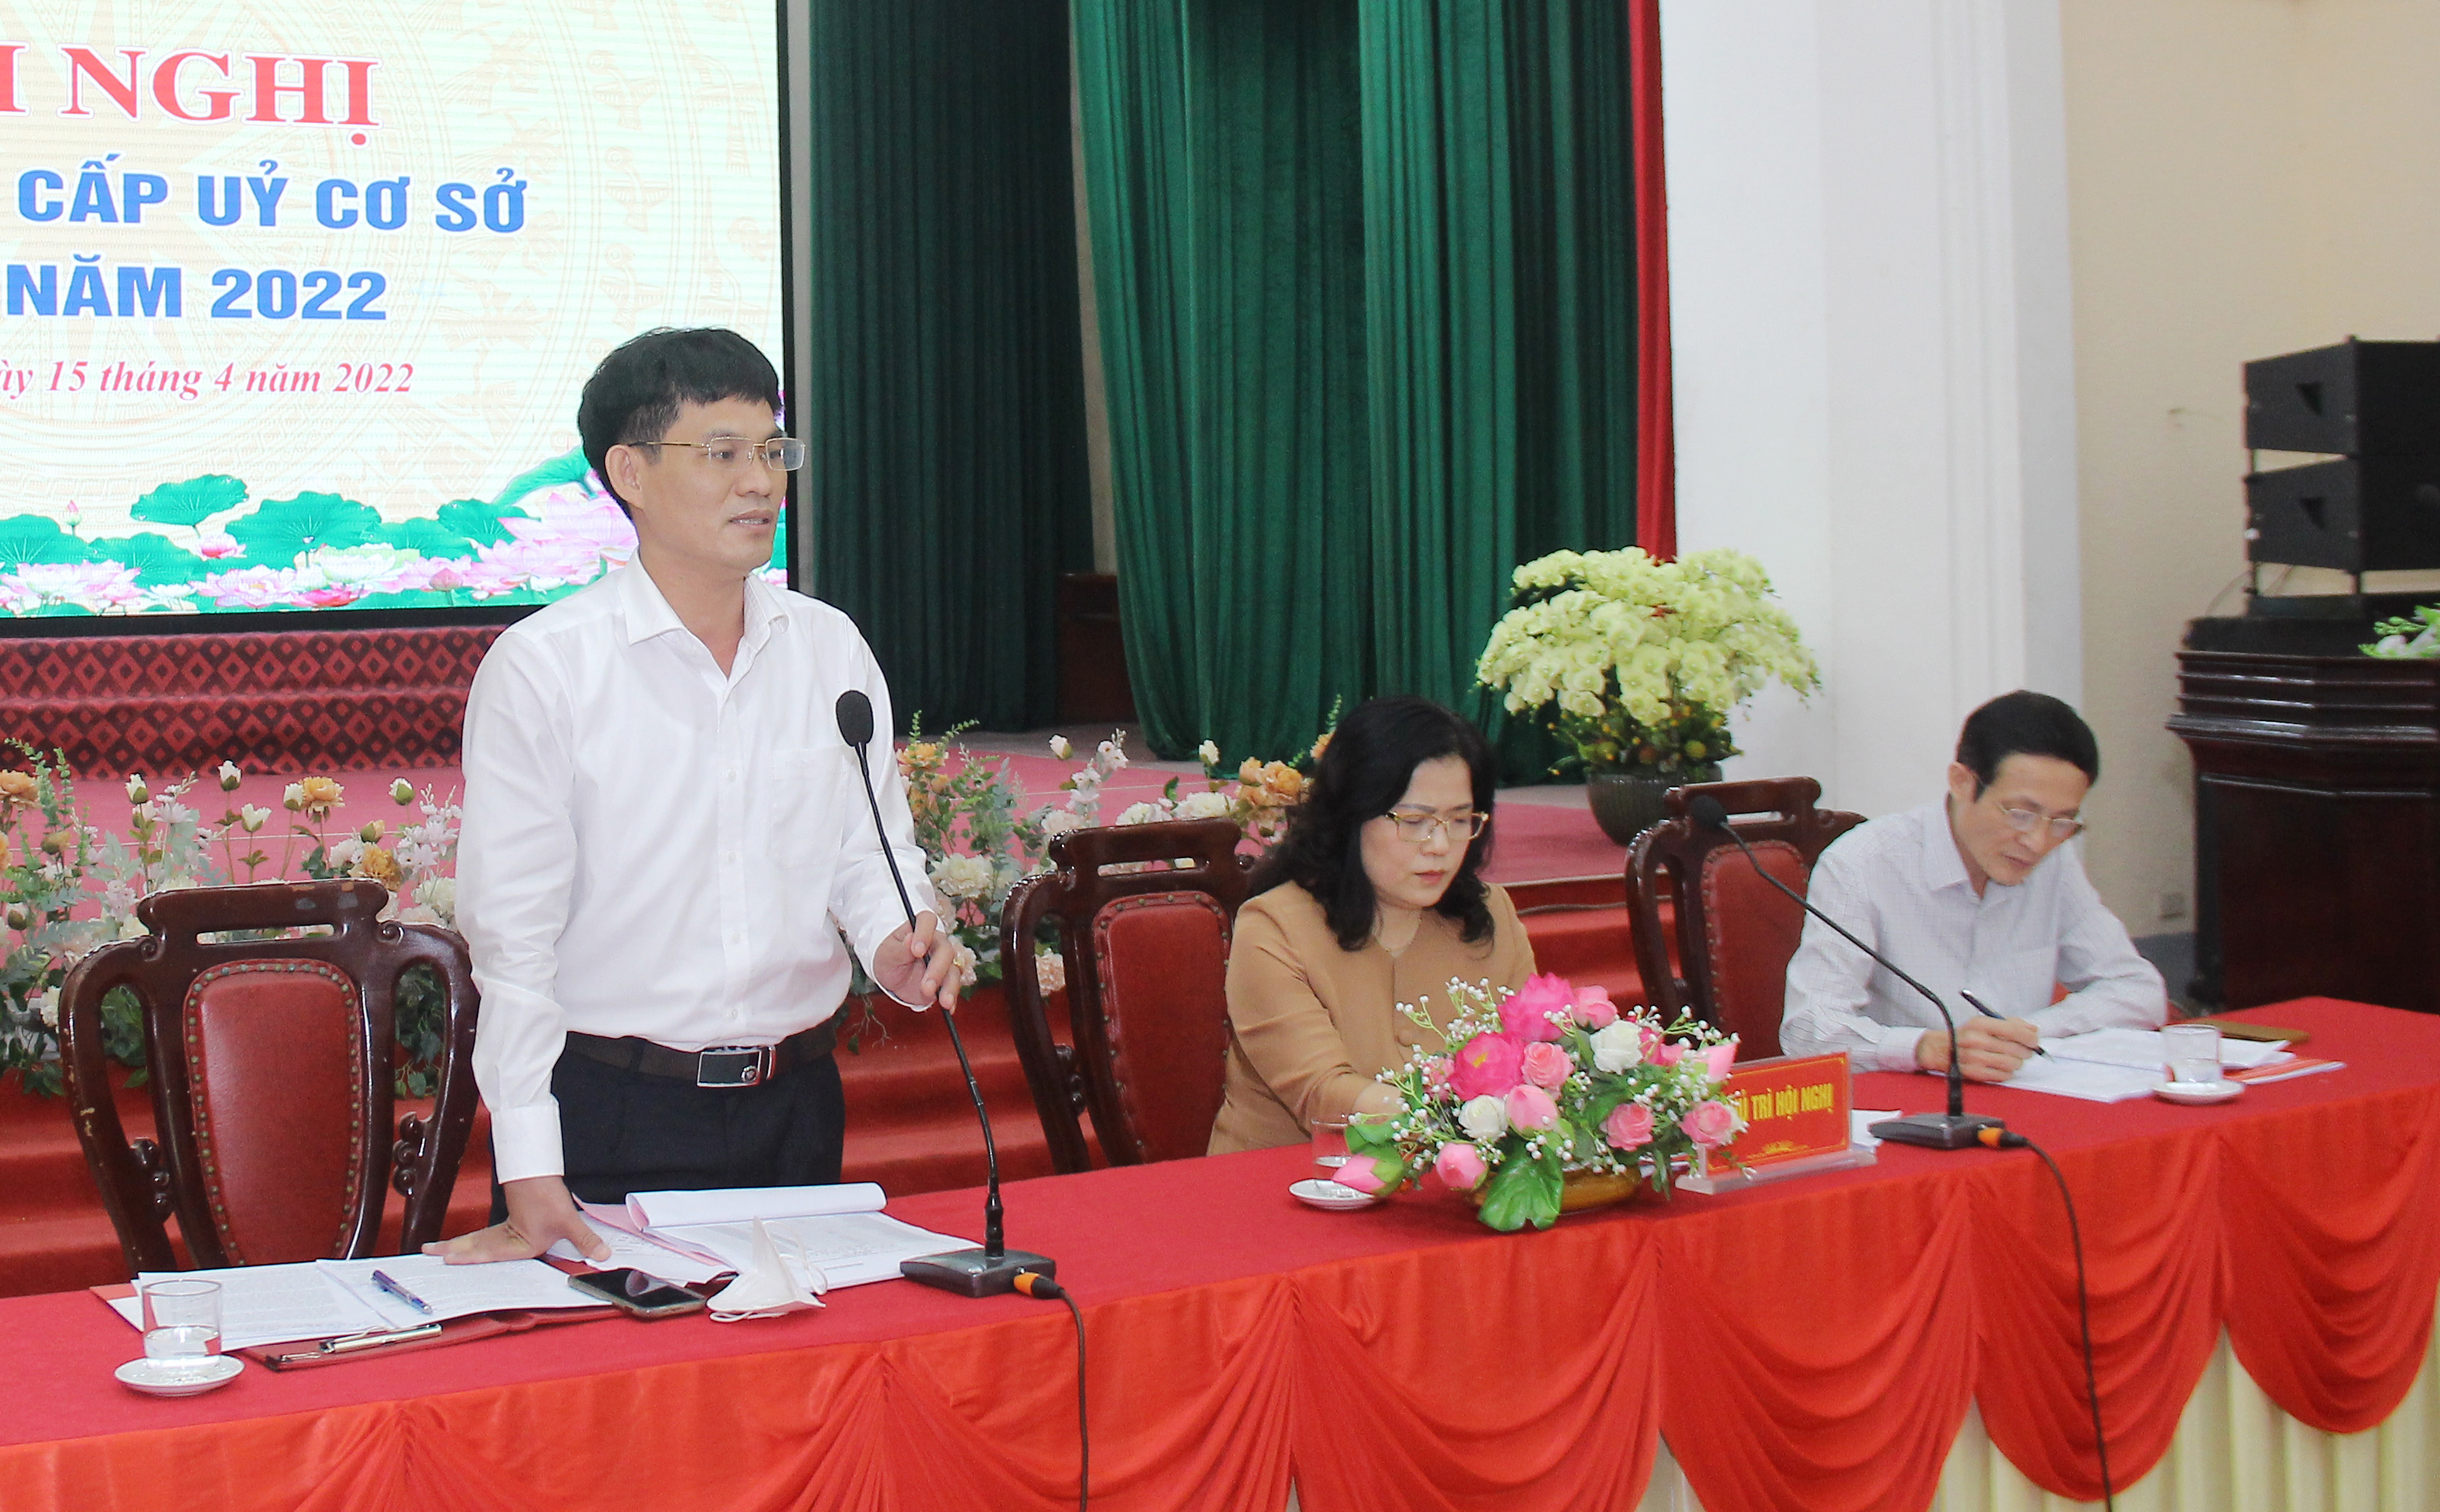 Đồng chí Chu Bá Long - Phó Bí thư Đảng ủy Khối điều hành thảo luận hội nghị cấp ủy cơ sở. Ảnh: Mai Hoa